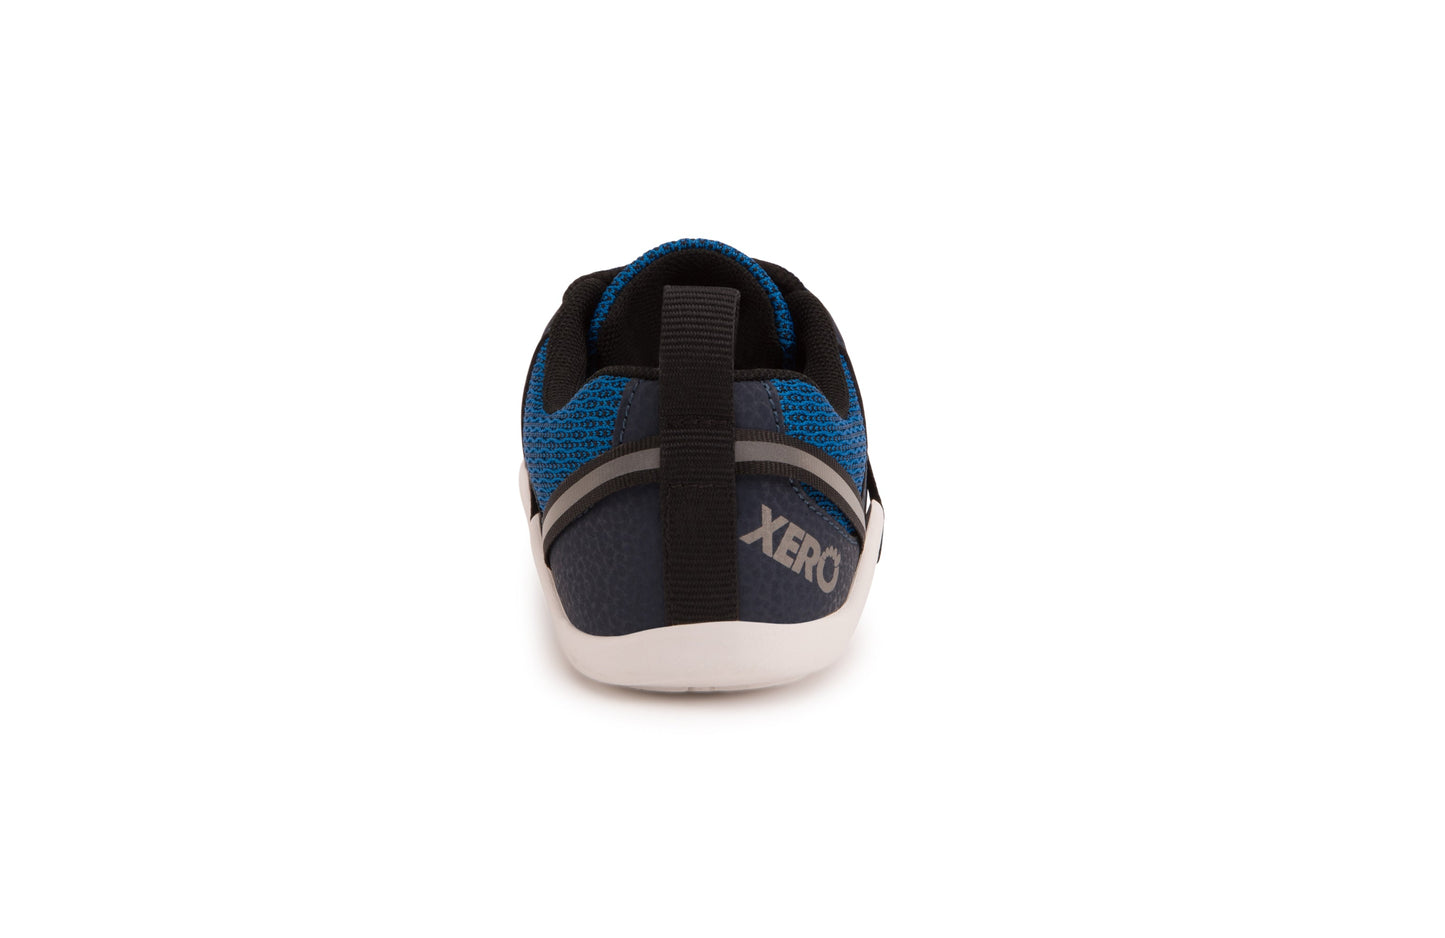 Xero Shoes Prio Kids barfods træningssko/sneakers til børn i farven mykonos blue, bagfra